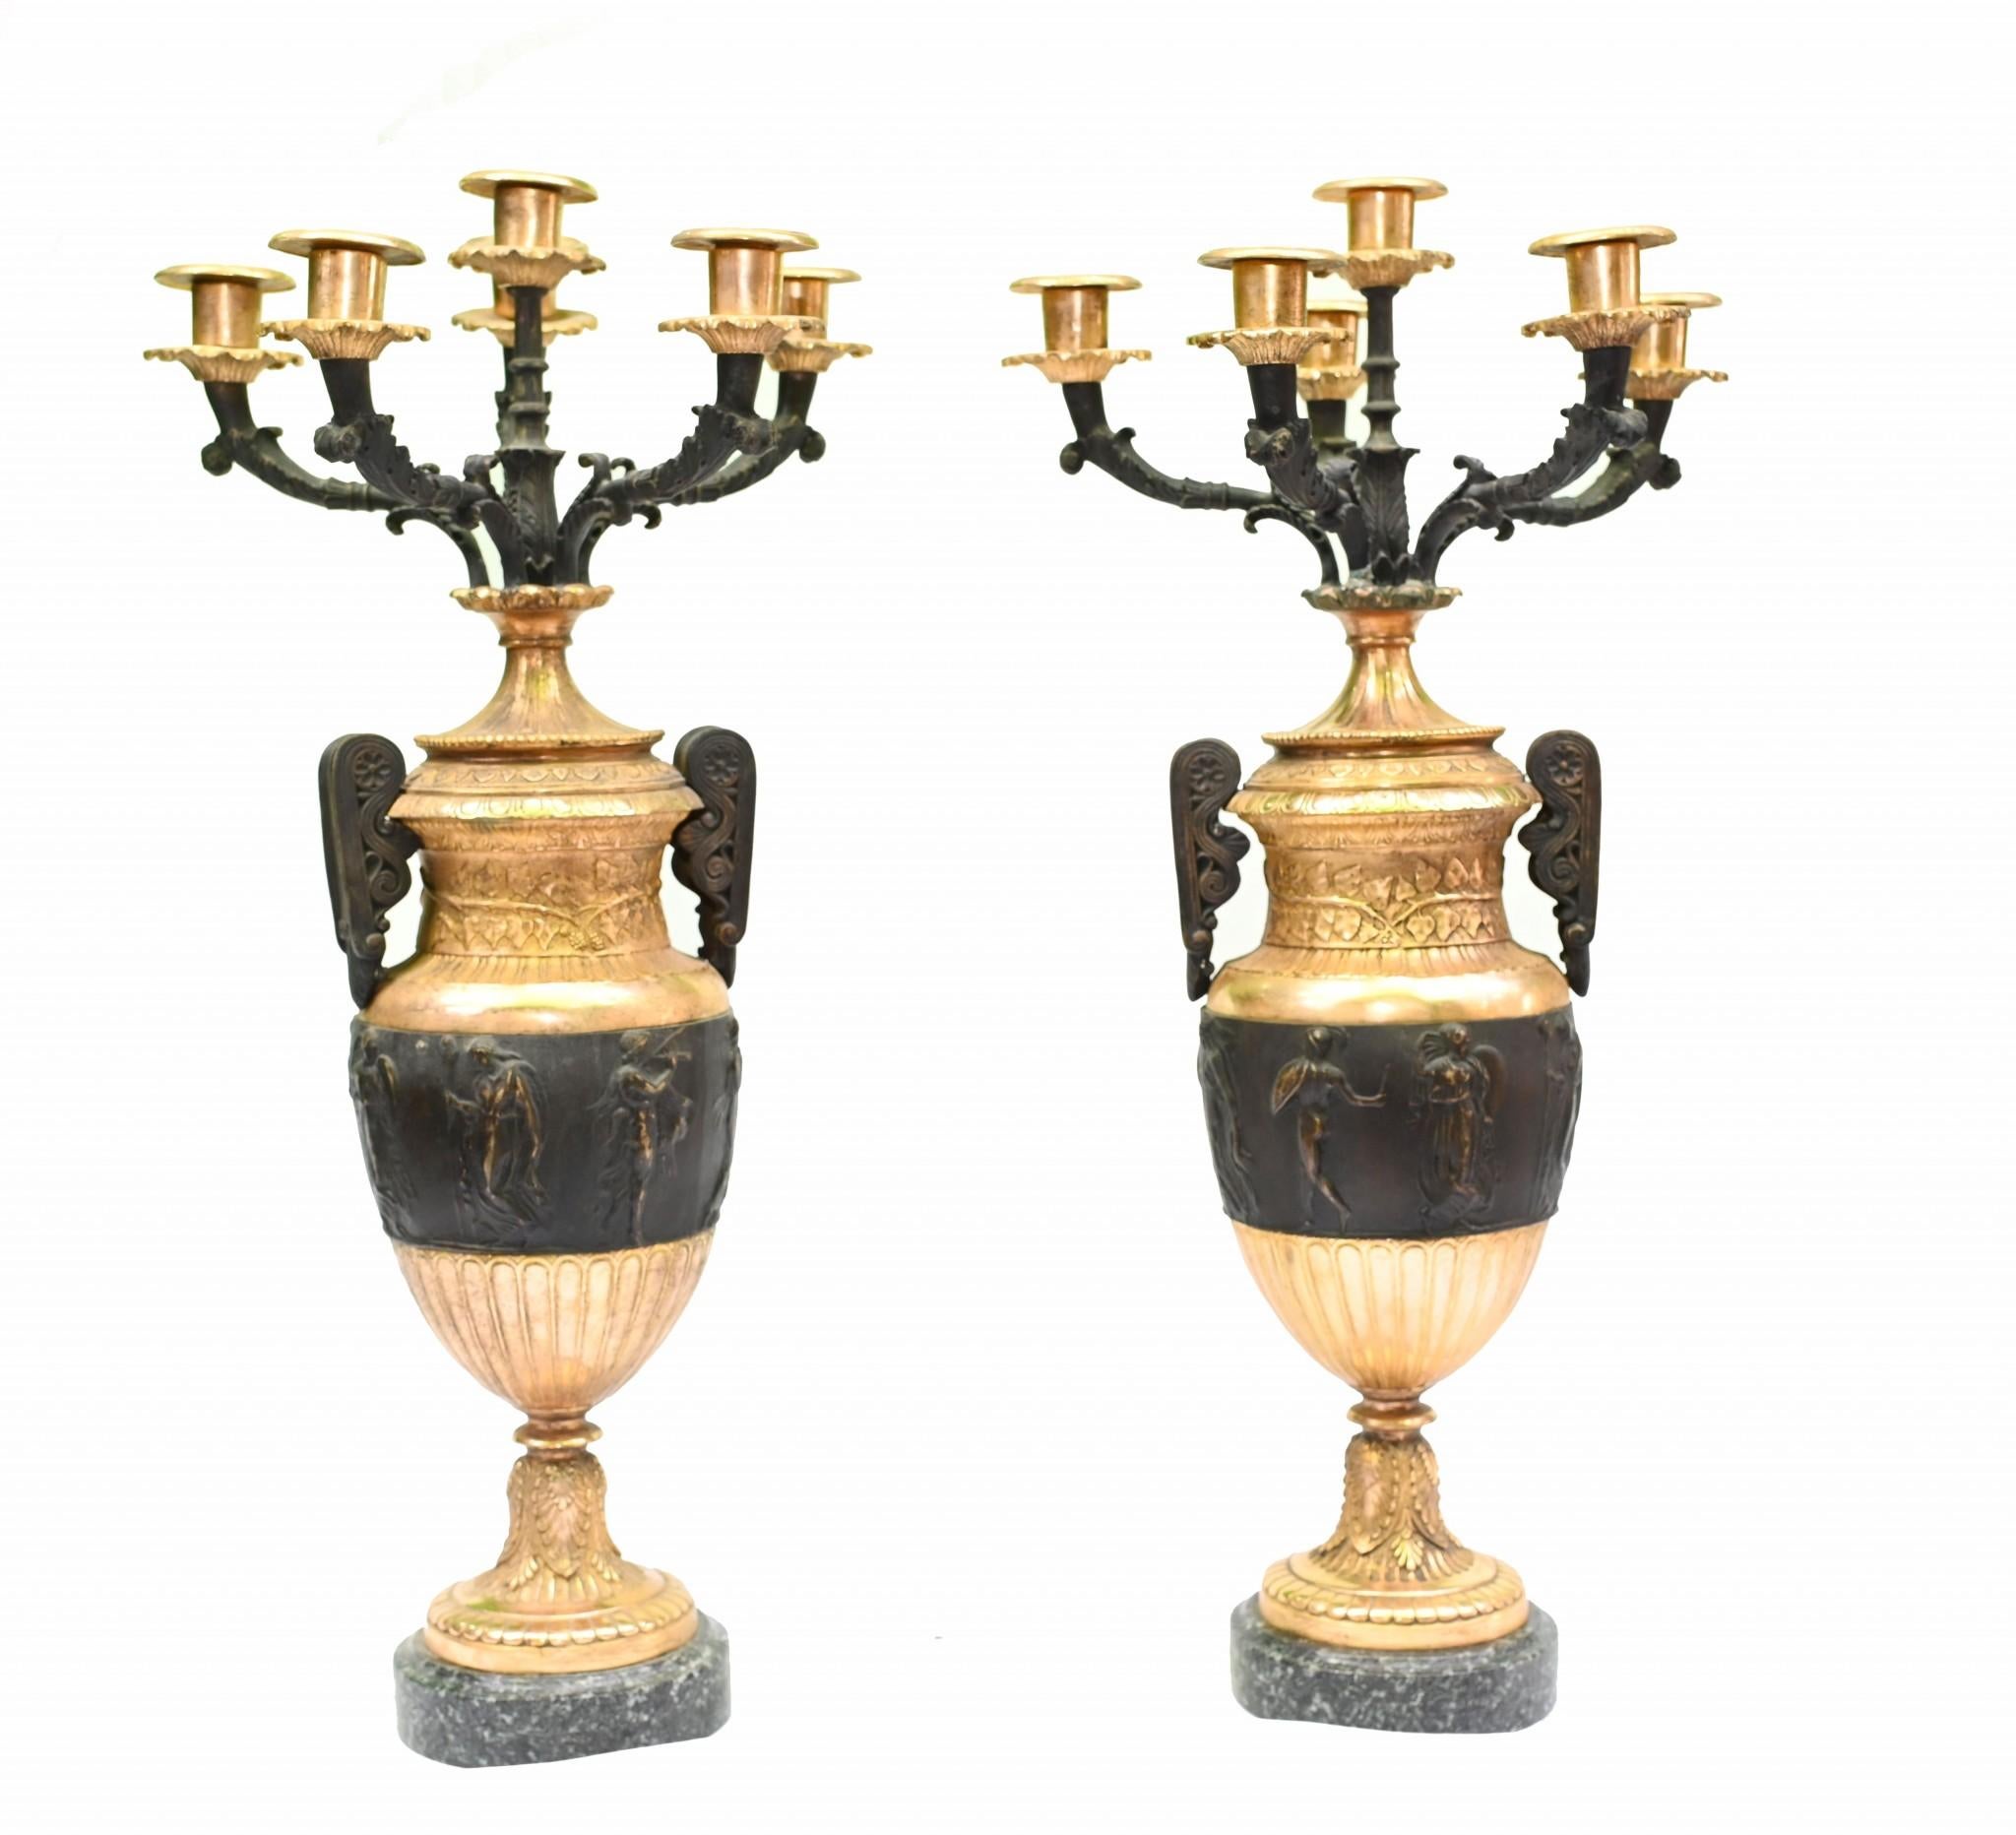 Vous voyez une paire d'urnes anciennes en bronze et en vermeil à la manière de Thomas Hope.
L'aspect est très Régence, avec un jeu de couleurs éblouissant entre le noir et le doré.
Il s'agit d'urnes amphores classiques - de style néo-grec - avec